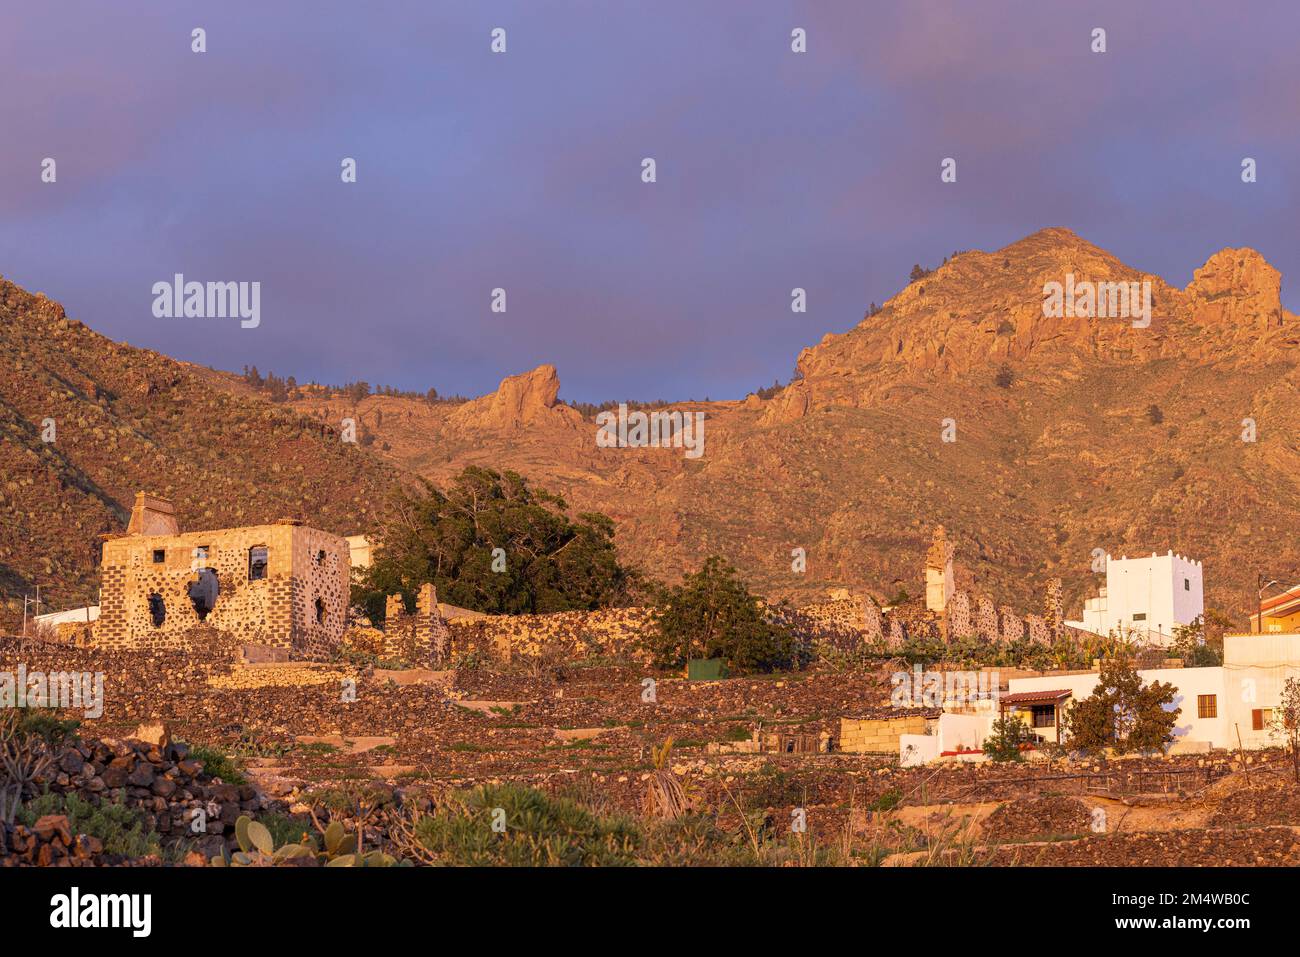 Ruinen der Casa Fuerte, ein altes Kolonialhaus und Schloss, am Rande der Stadt Adeje, Teneriffa, Kanarische Inseln, Spanien, Stockfoto